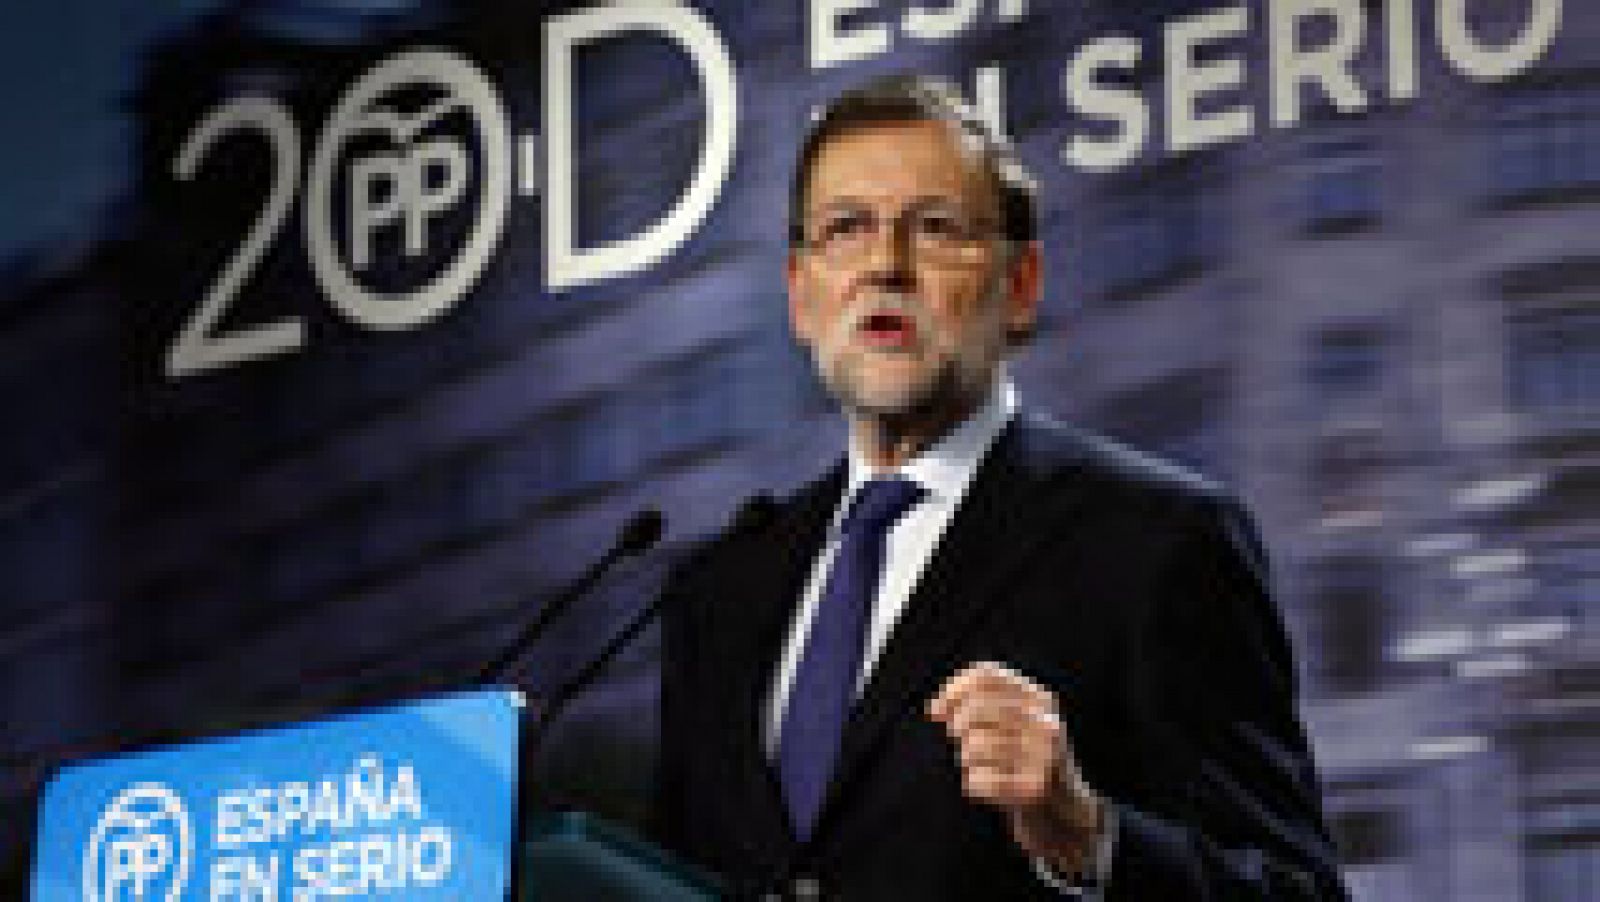 Telediario 1: Rajoy alerta del riesgo de "parálisis" y dice que hablará con los partidos que defienden la soberanía nacional | RTVE Play